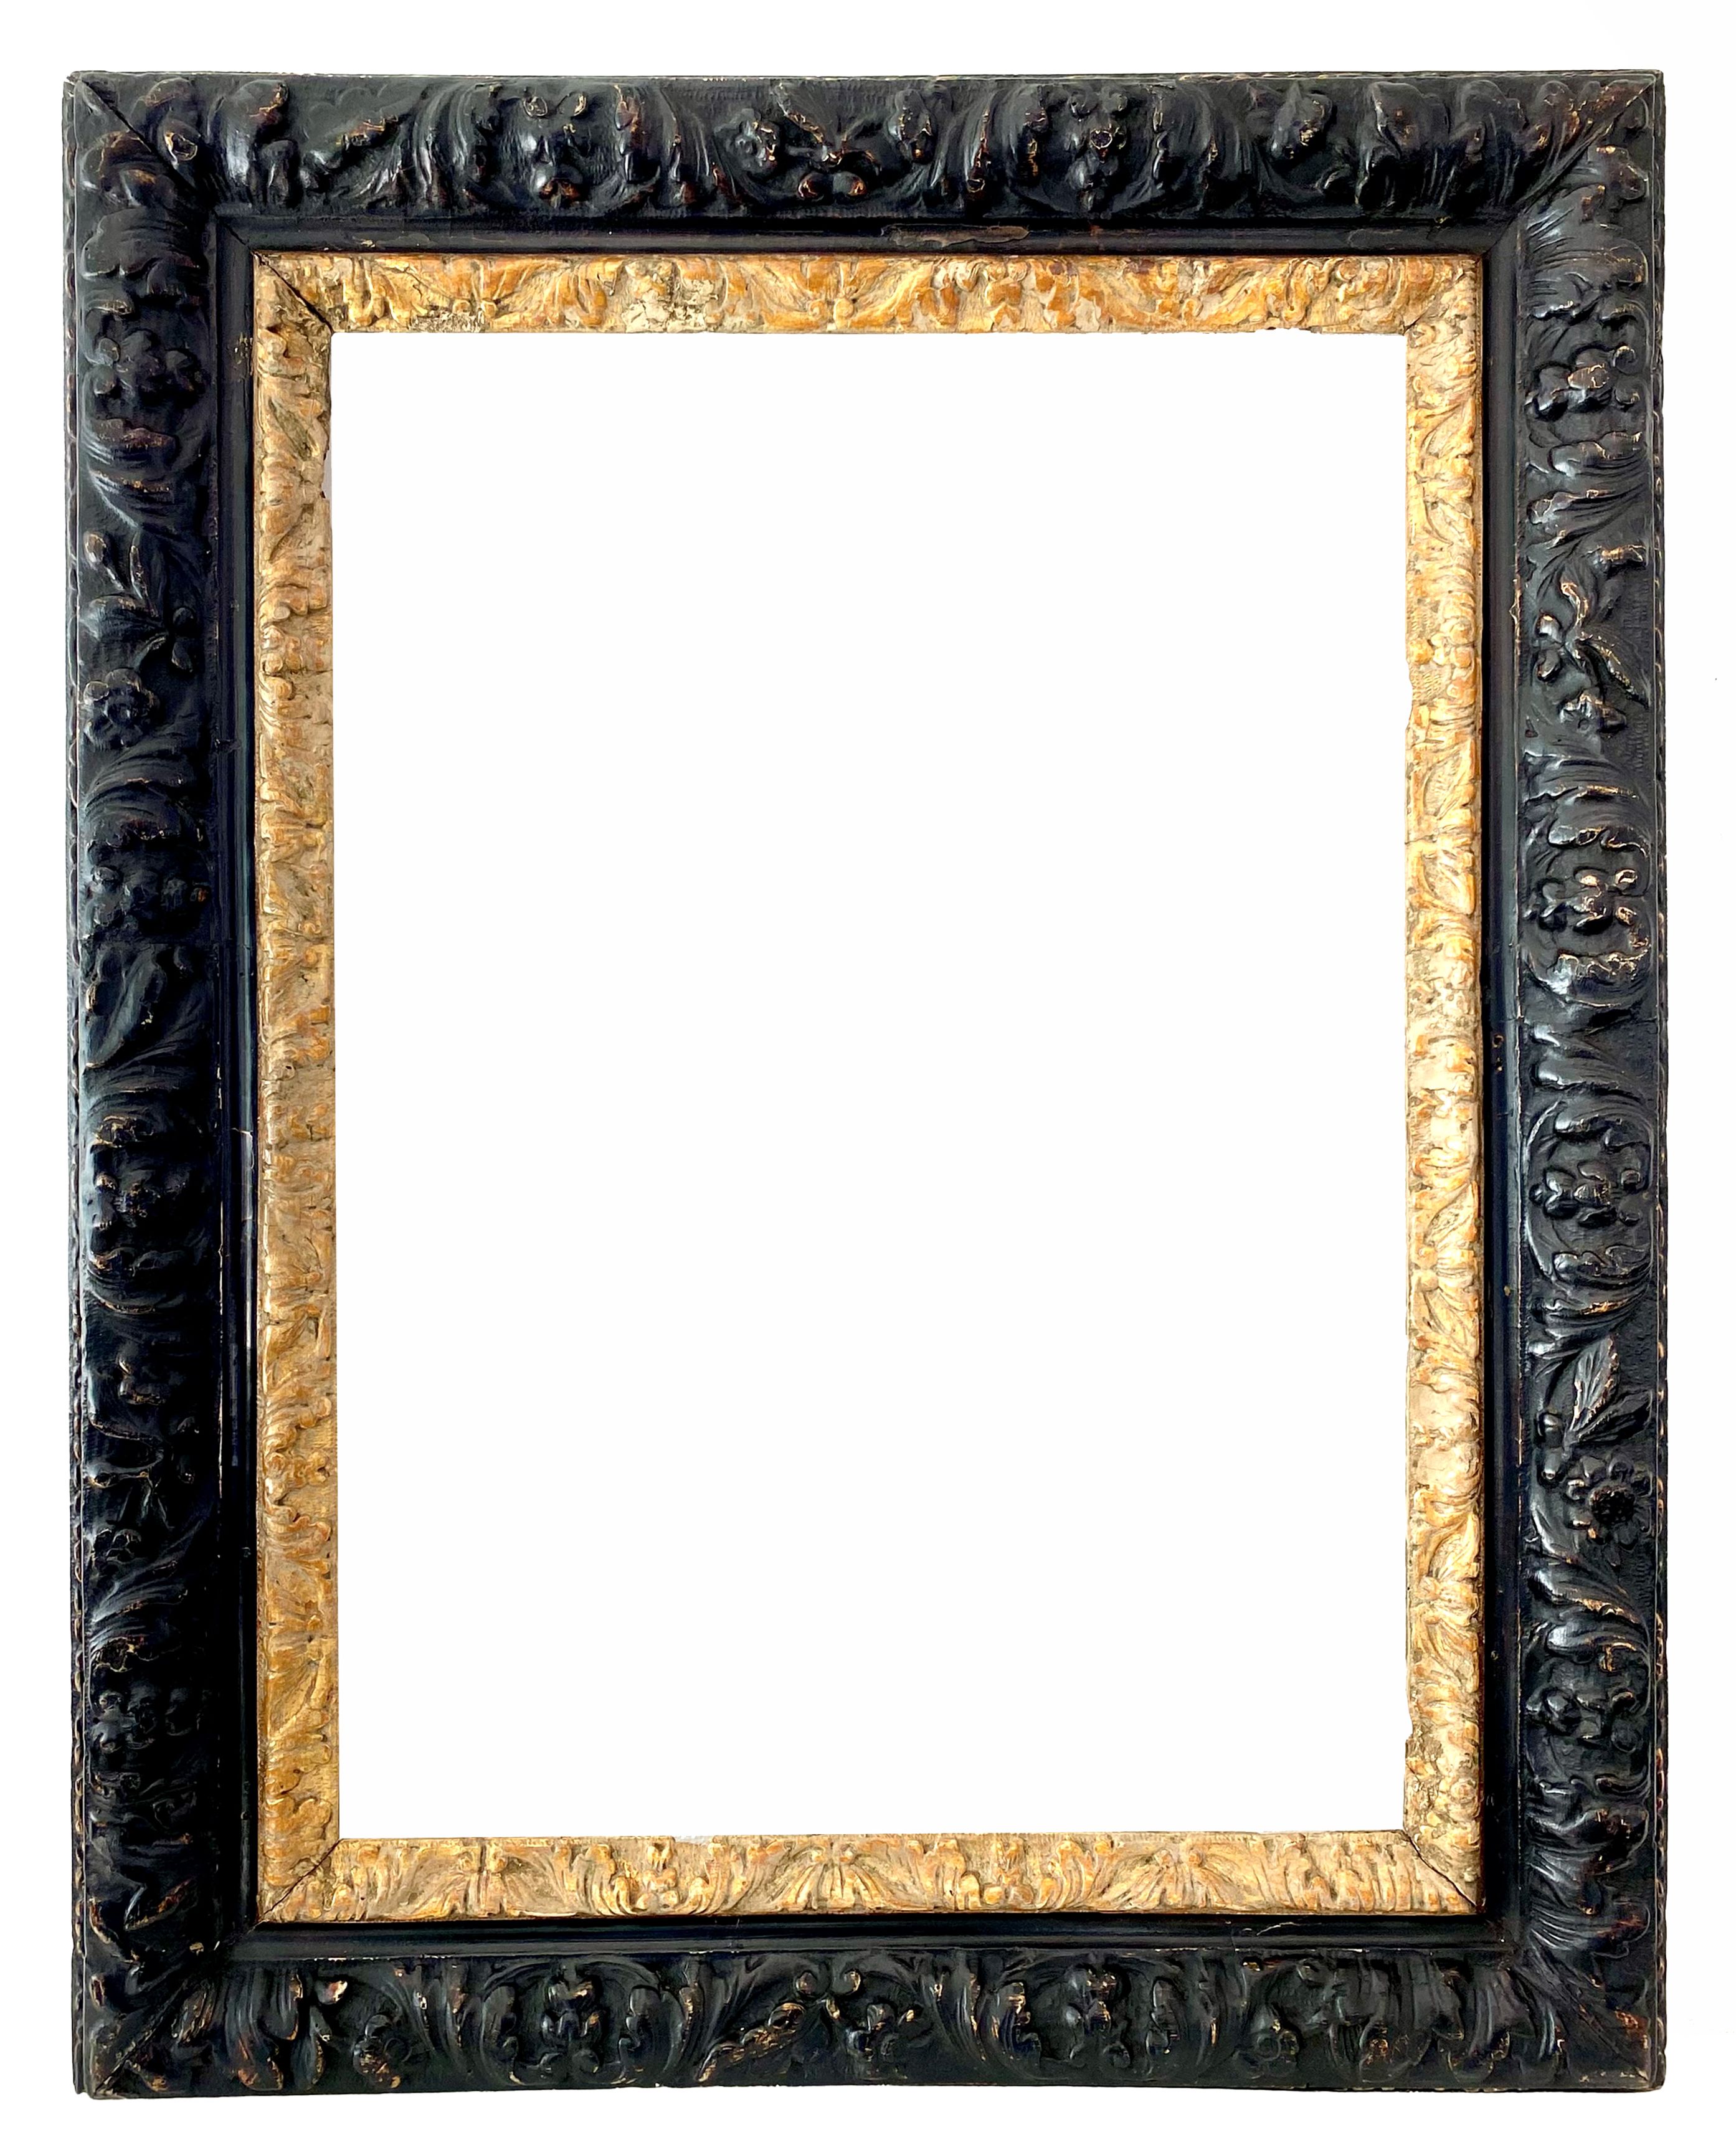 Louis XIV frame - 59.00 X 43.00 - Ref - 1675